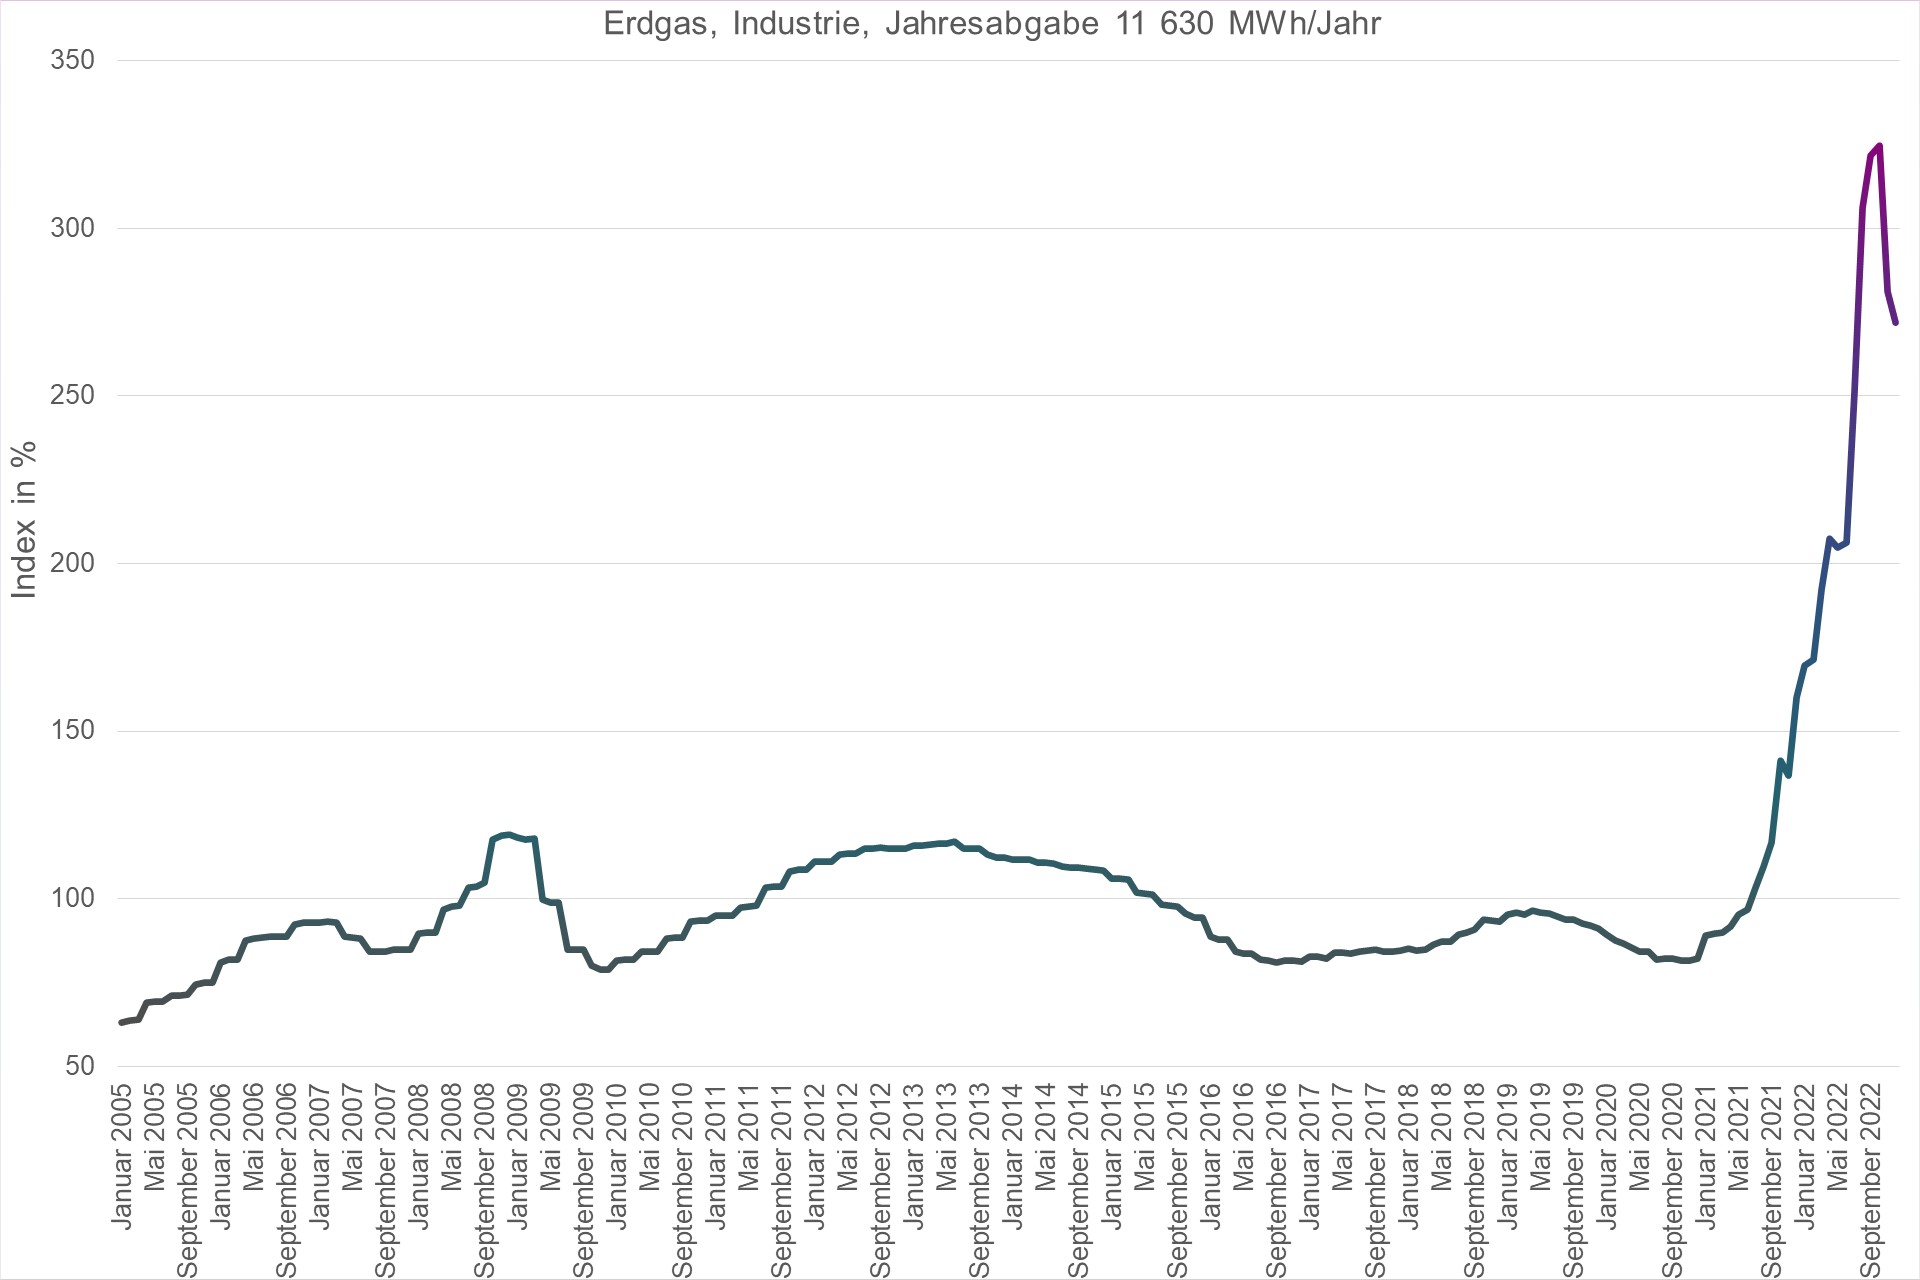 Grafik Preisindex Erdgas, Industrie, Jahresabgabe 11630 MWh/Jahr